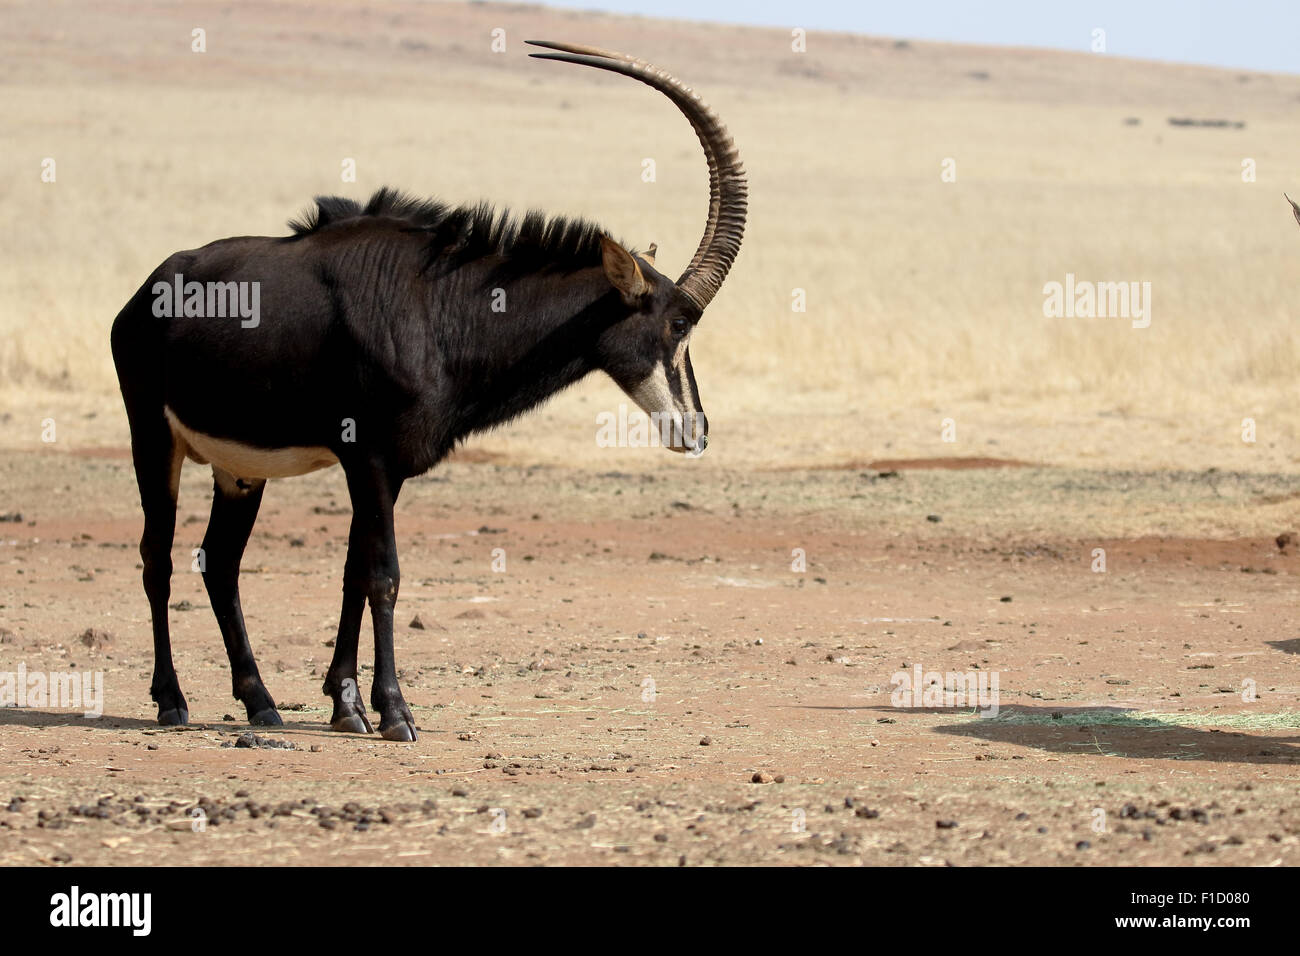 Sable, Hippotragus niger, seul mammifère, Afrique du Sud, août 2015 Banque D'Images